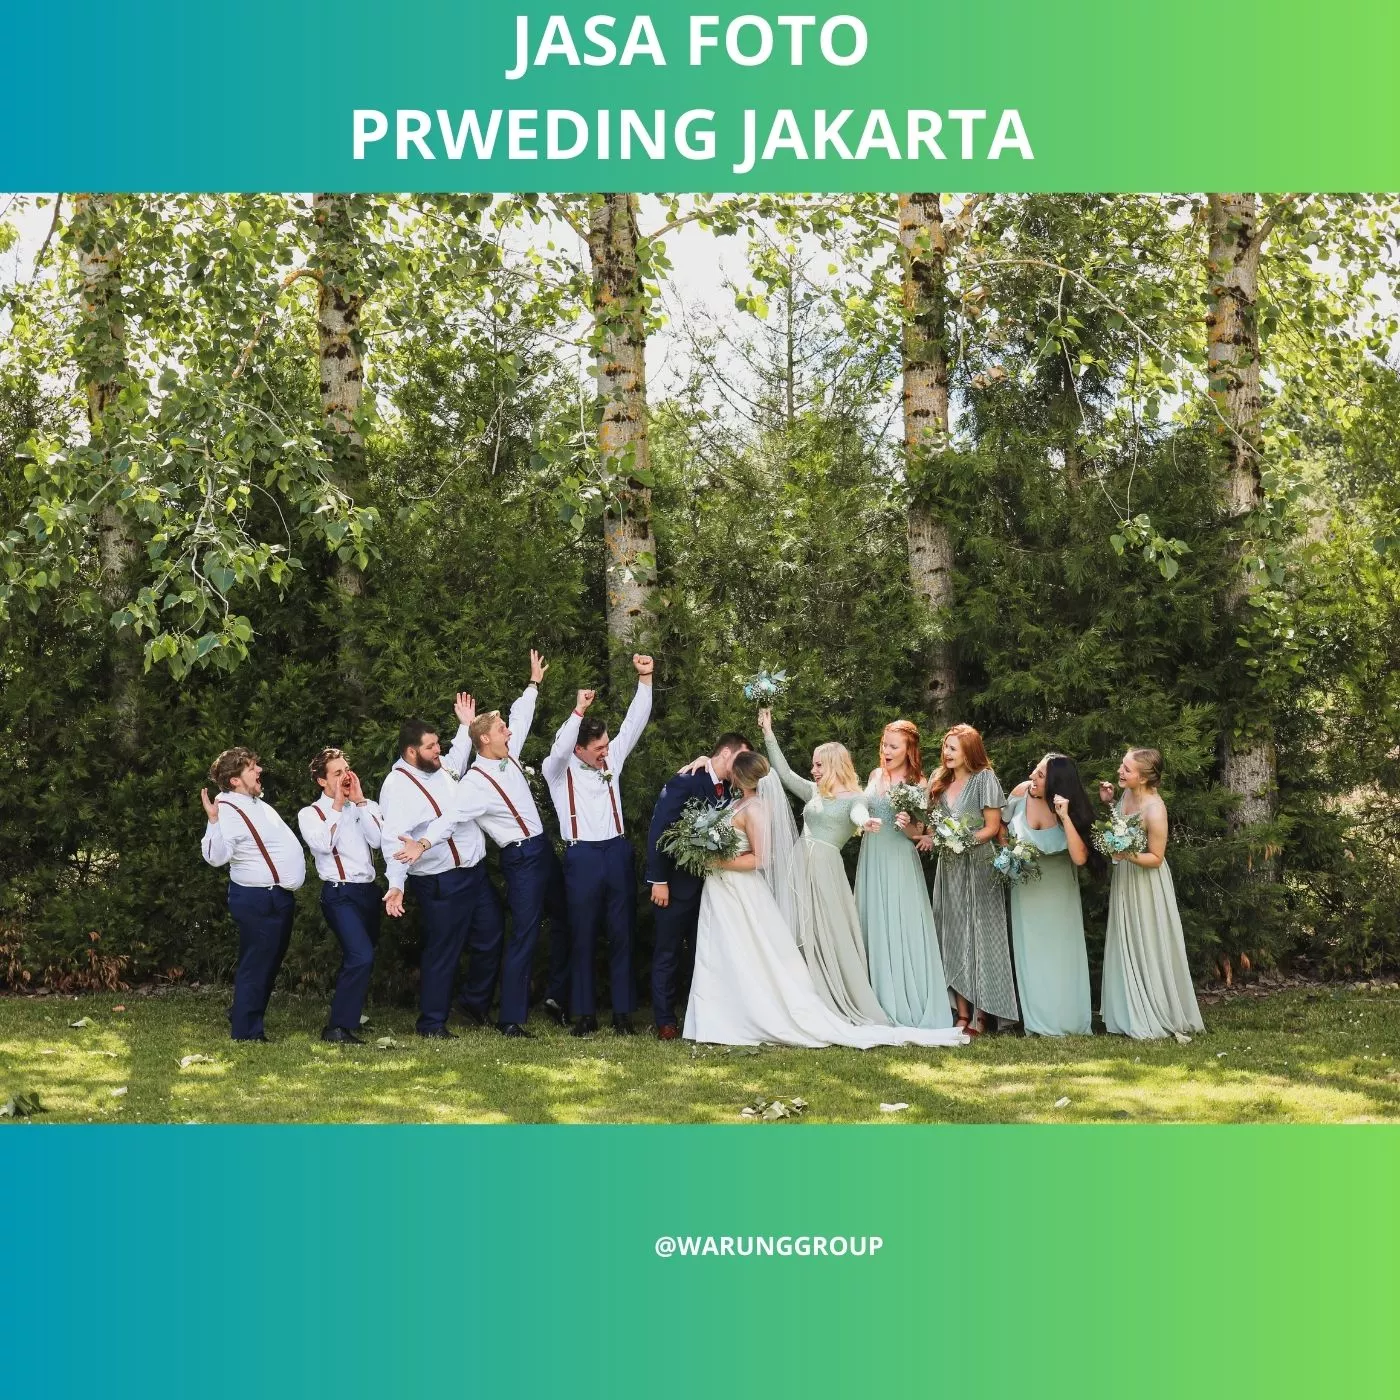 Jasa Foto Prewedding Jakarta